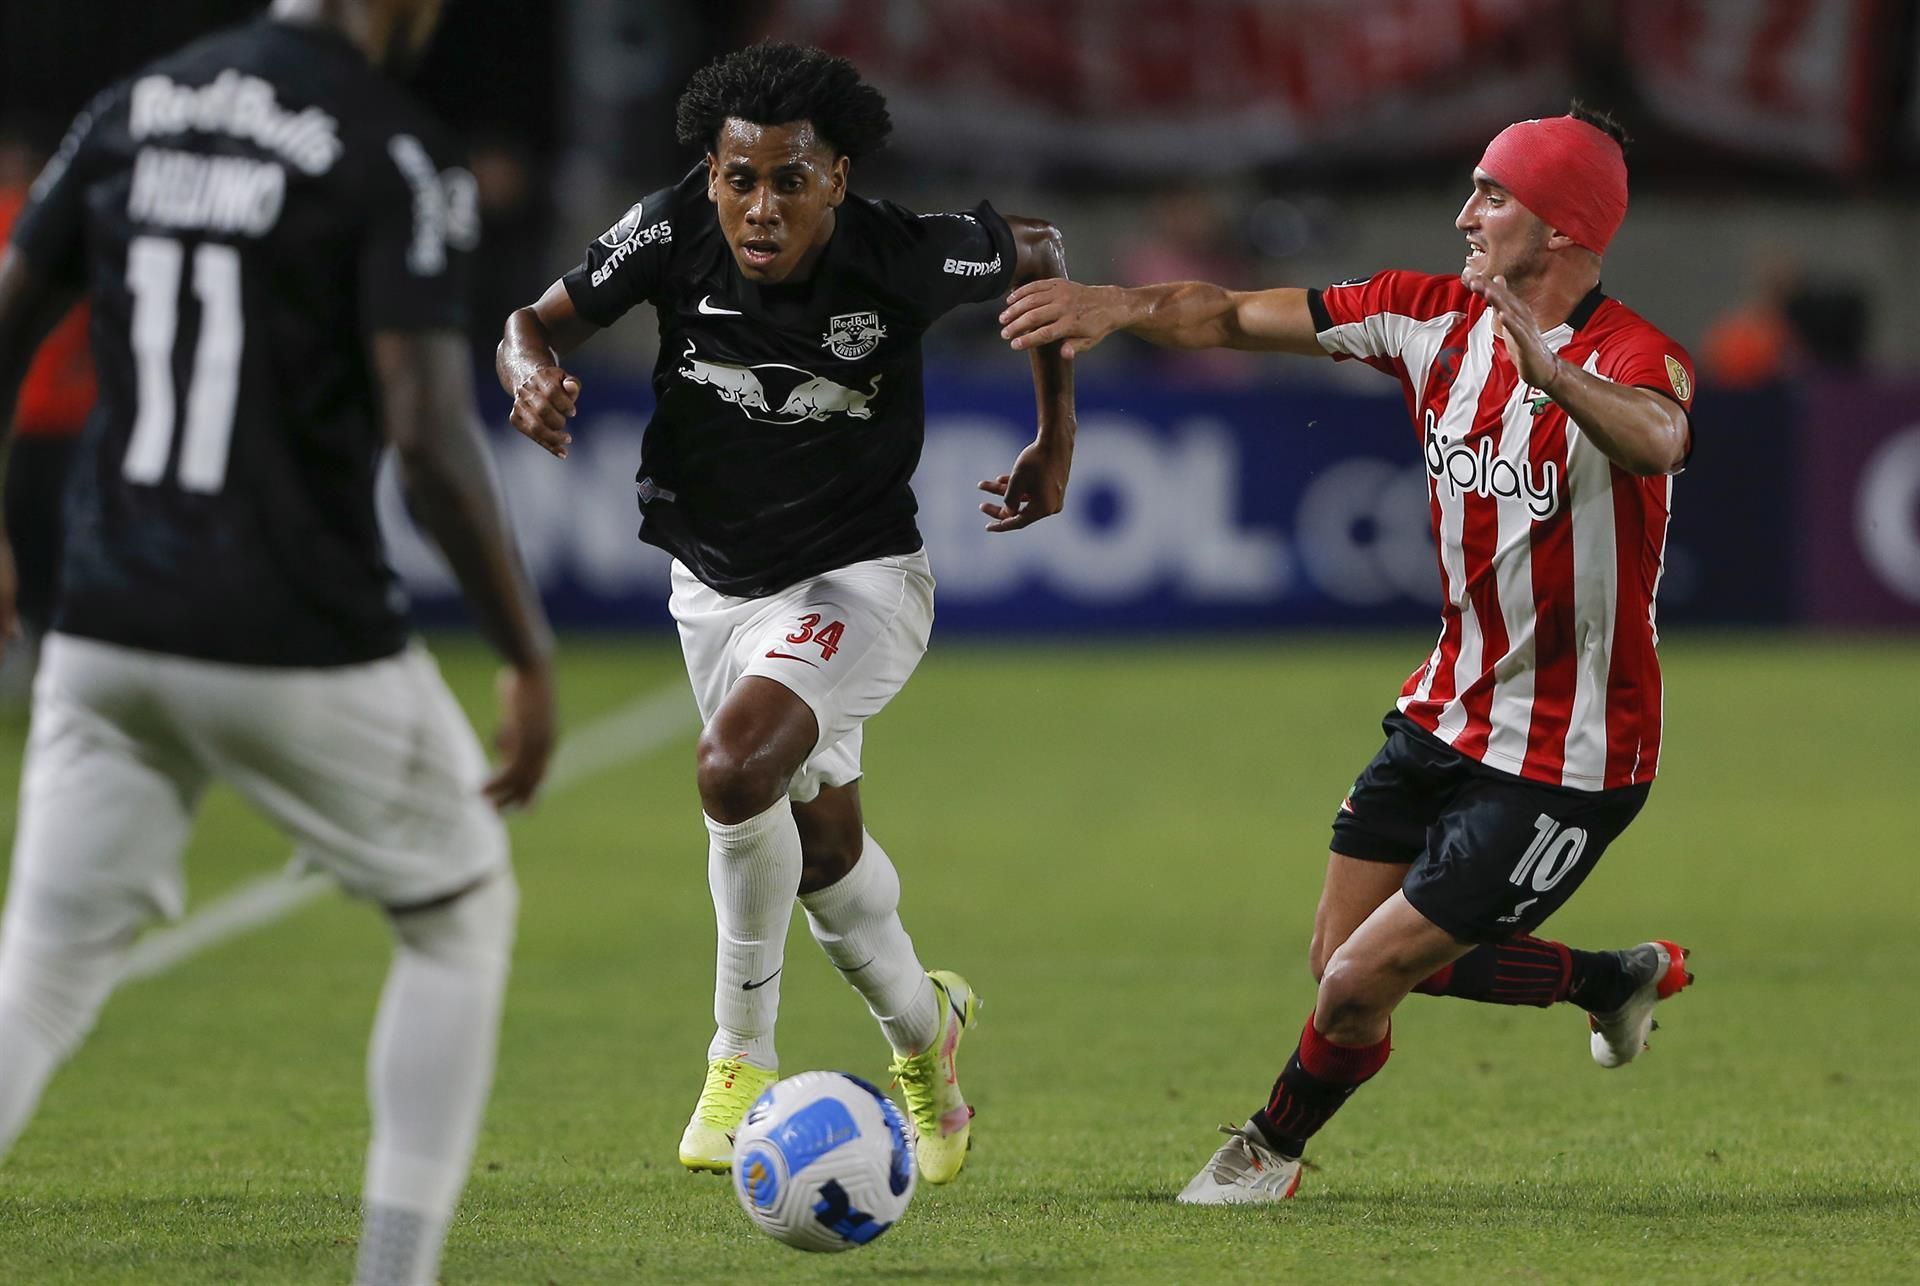 RB Bragantino face Estudiantes in their upcoming Copa Libertadores fixture